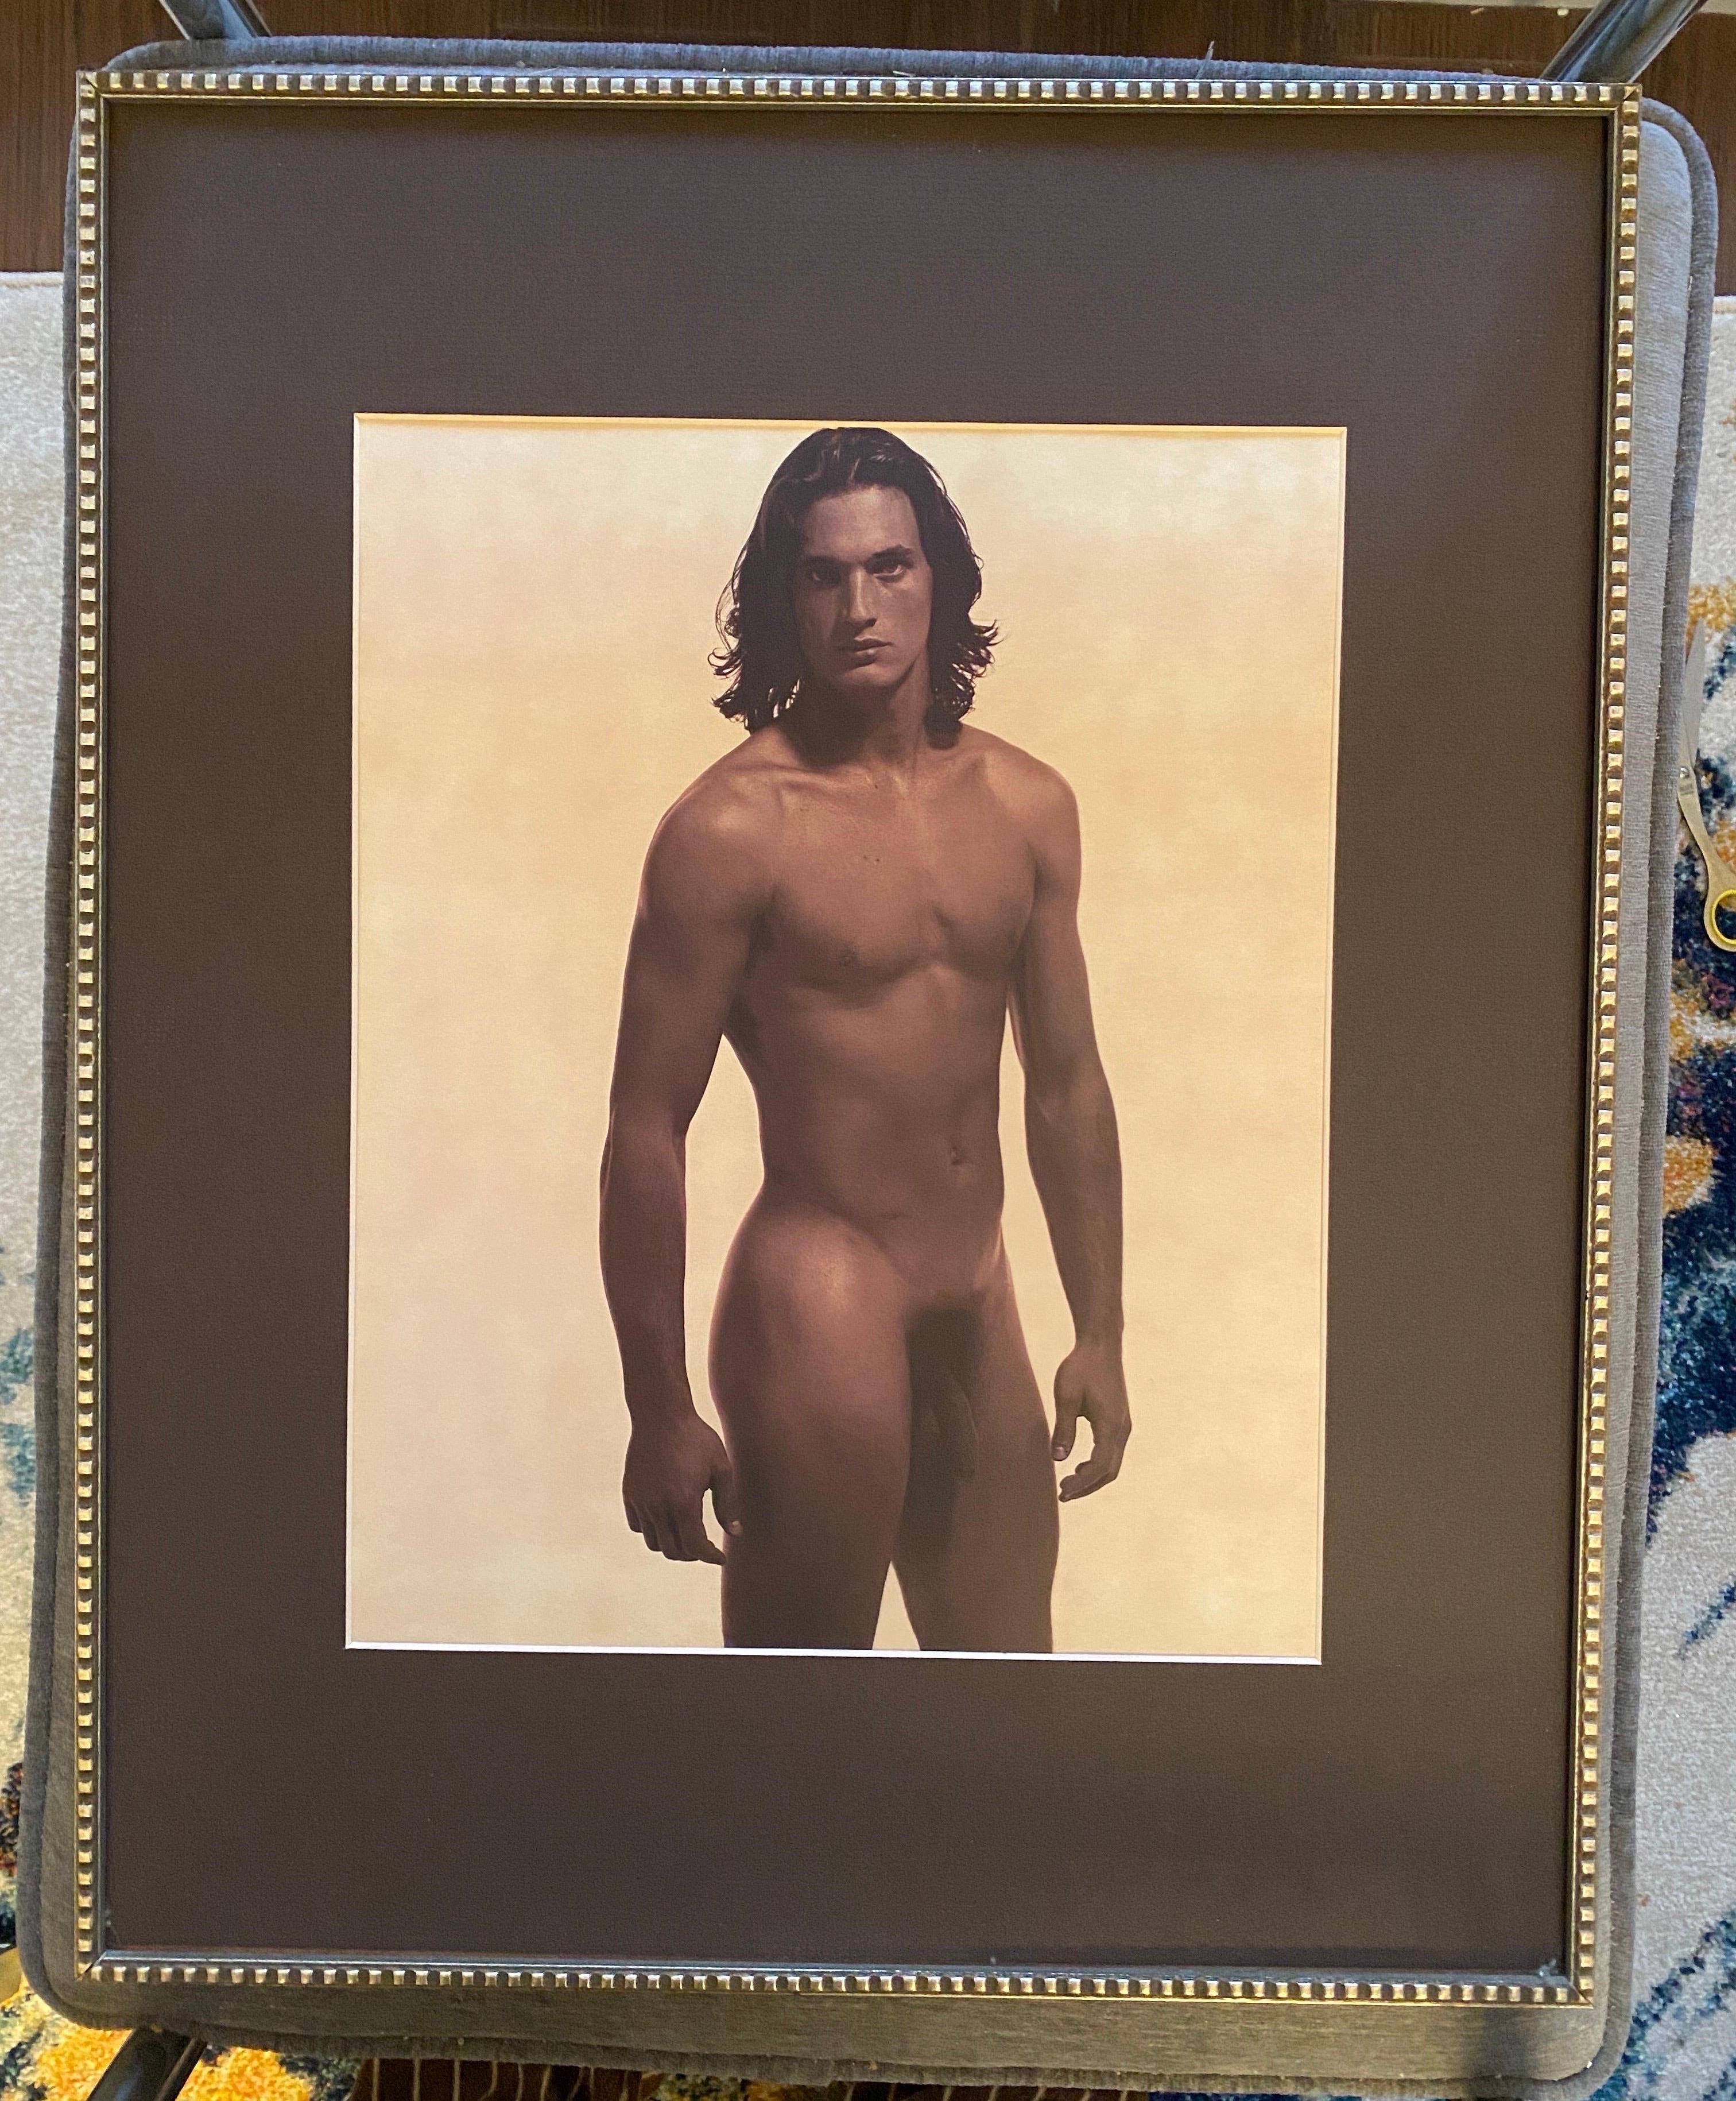 Karl Lagerfeld photographie de Philippe Reynaud, 1997.
Ce magnifique nu masculin a été inclus dans une série de lithographies photographiques de modèles nus/célébrités réalisées pour Visionaire, NYC et publiées en 1997. Ces rares photos lithos